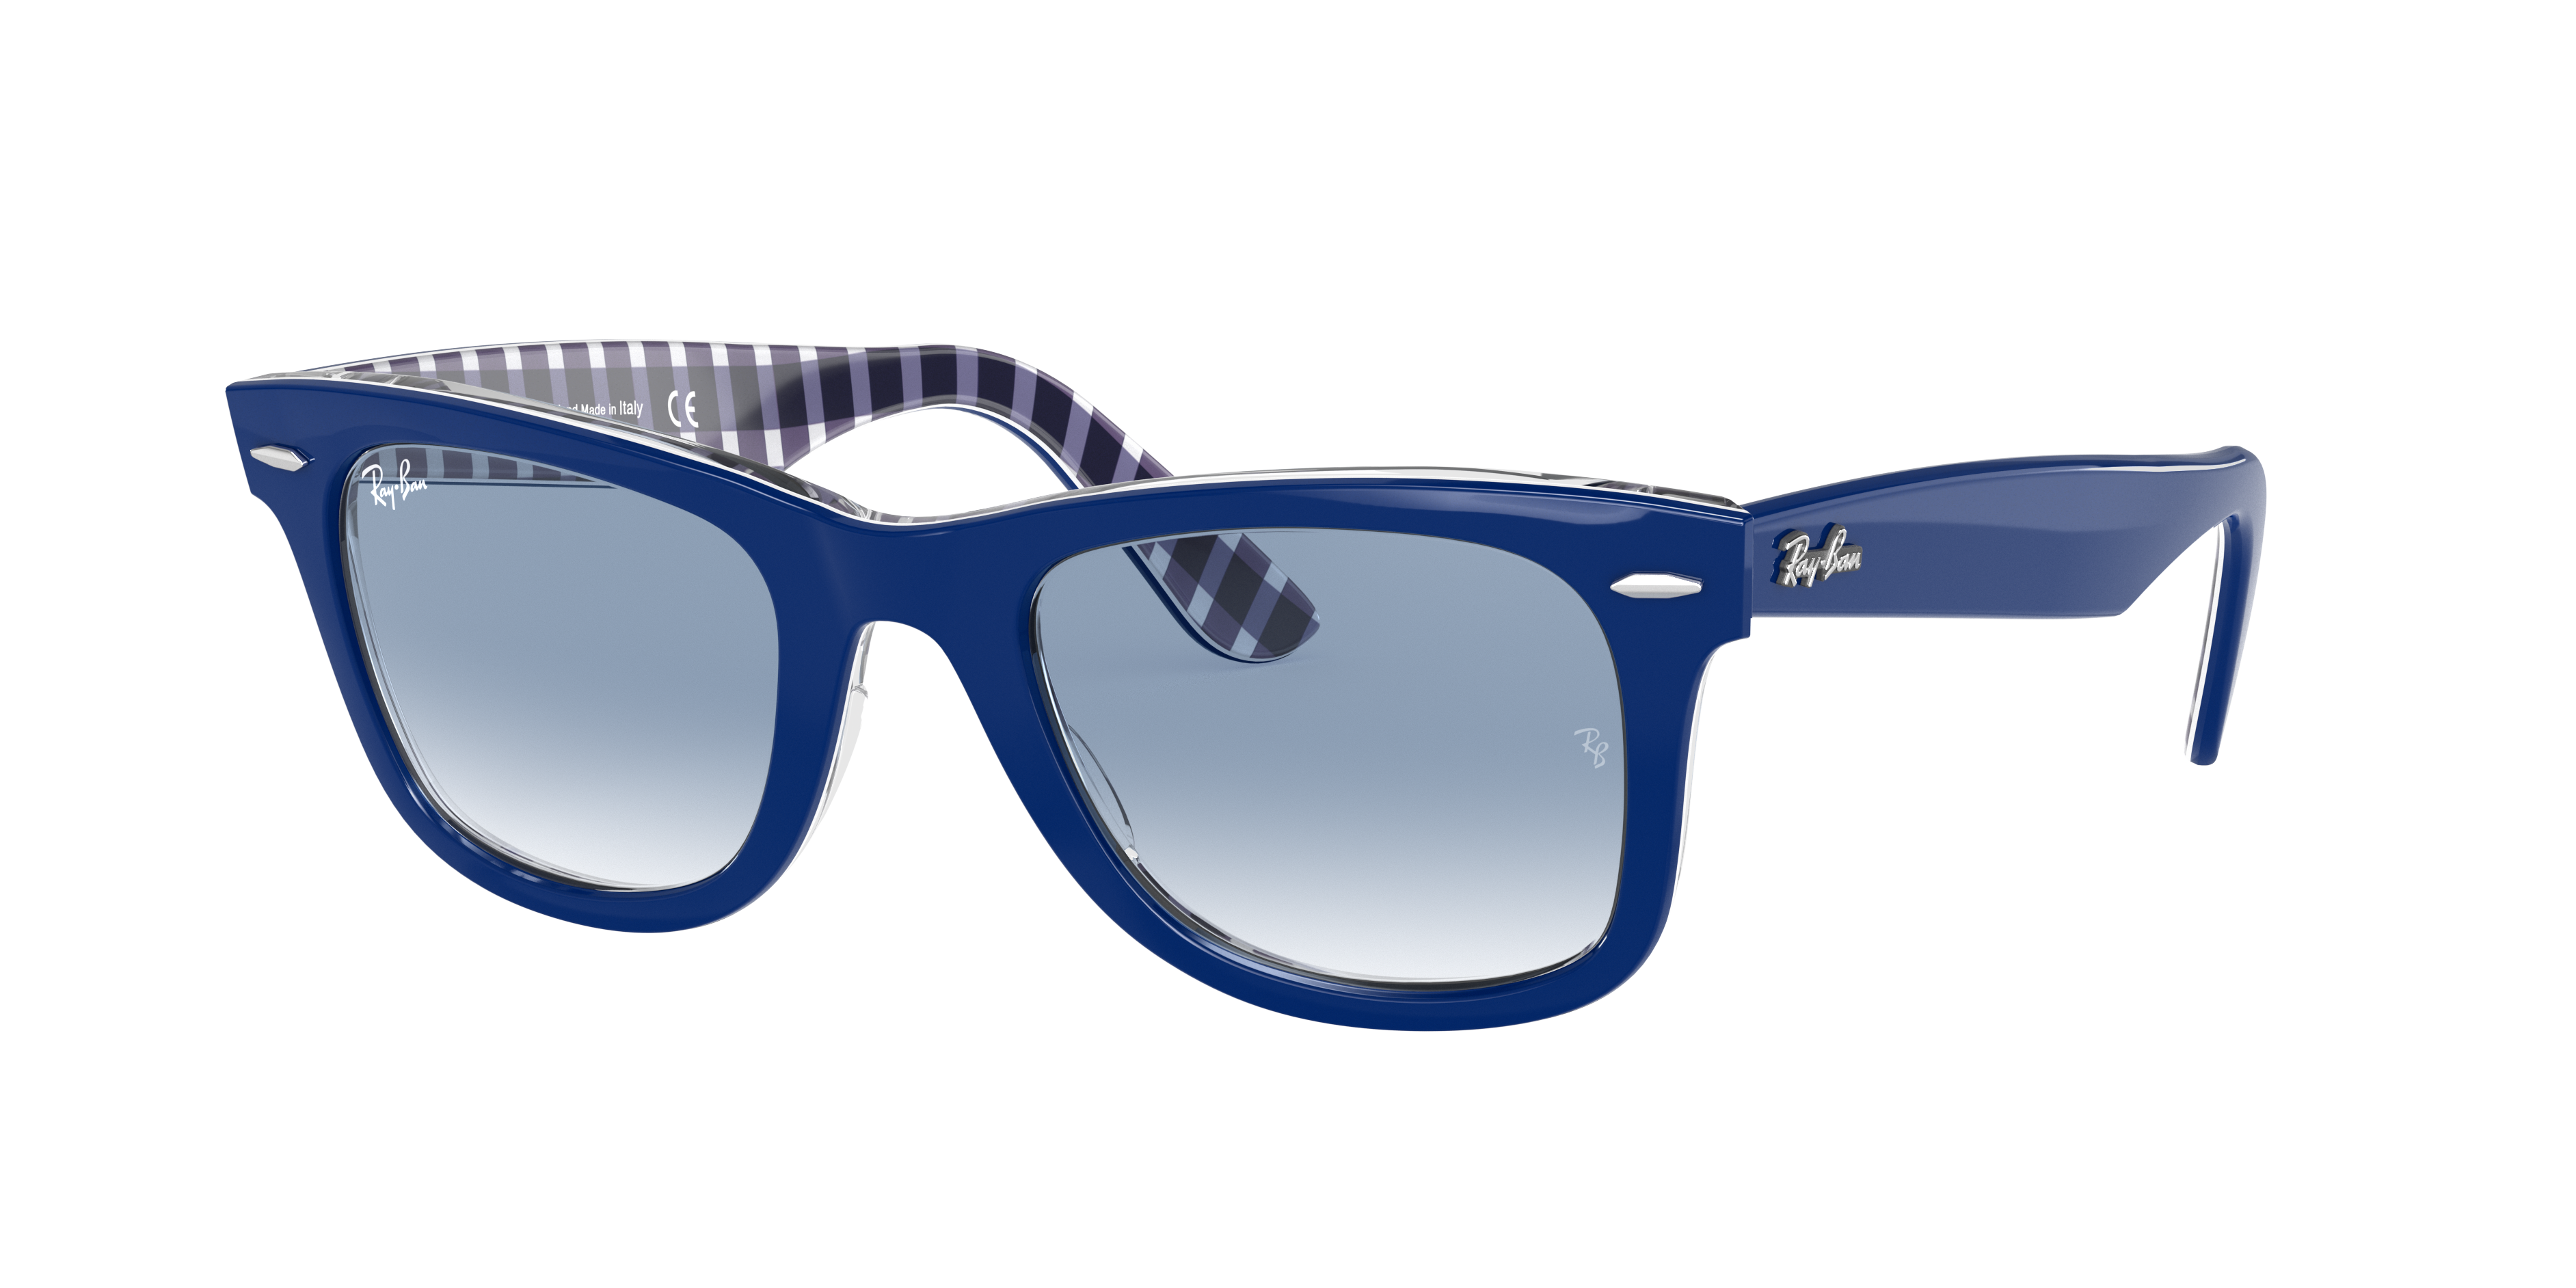 beloning schakelaar geïrriteerd raken Original Wayfarer Color Mix Sunglasses in Blue and Light Blue | Ray-Ban®